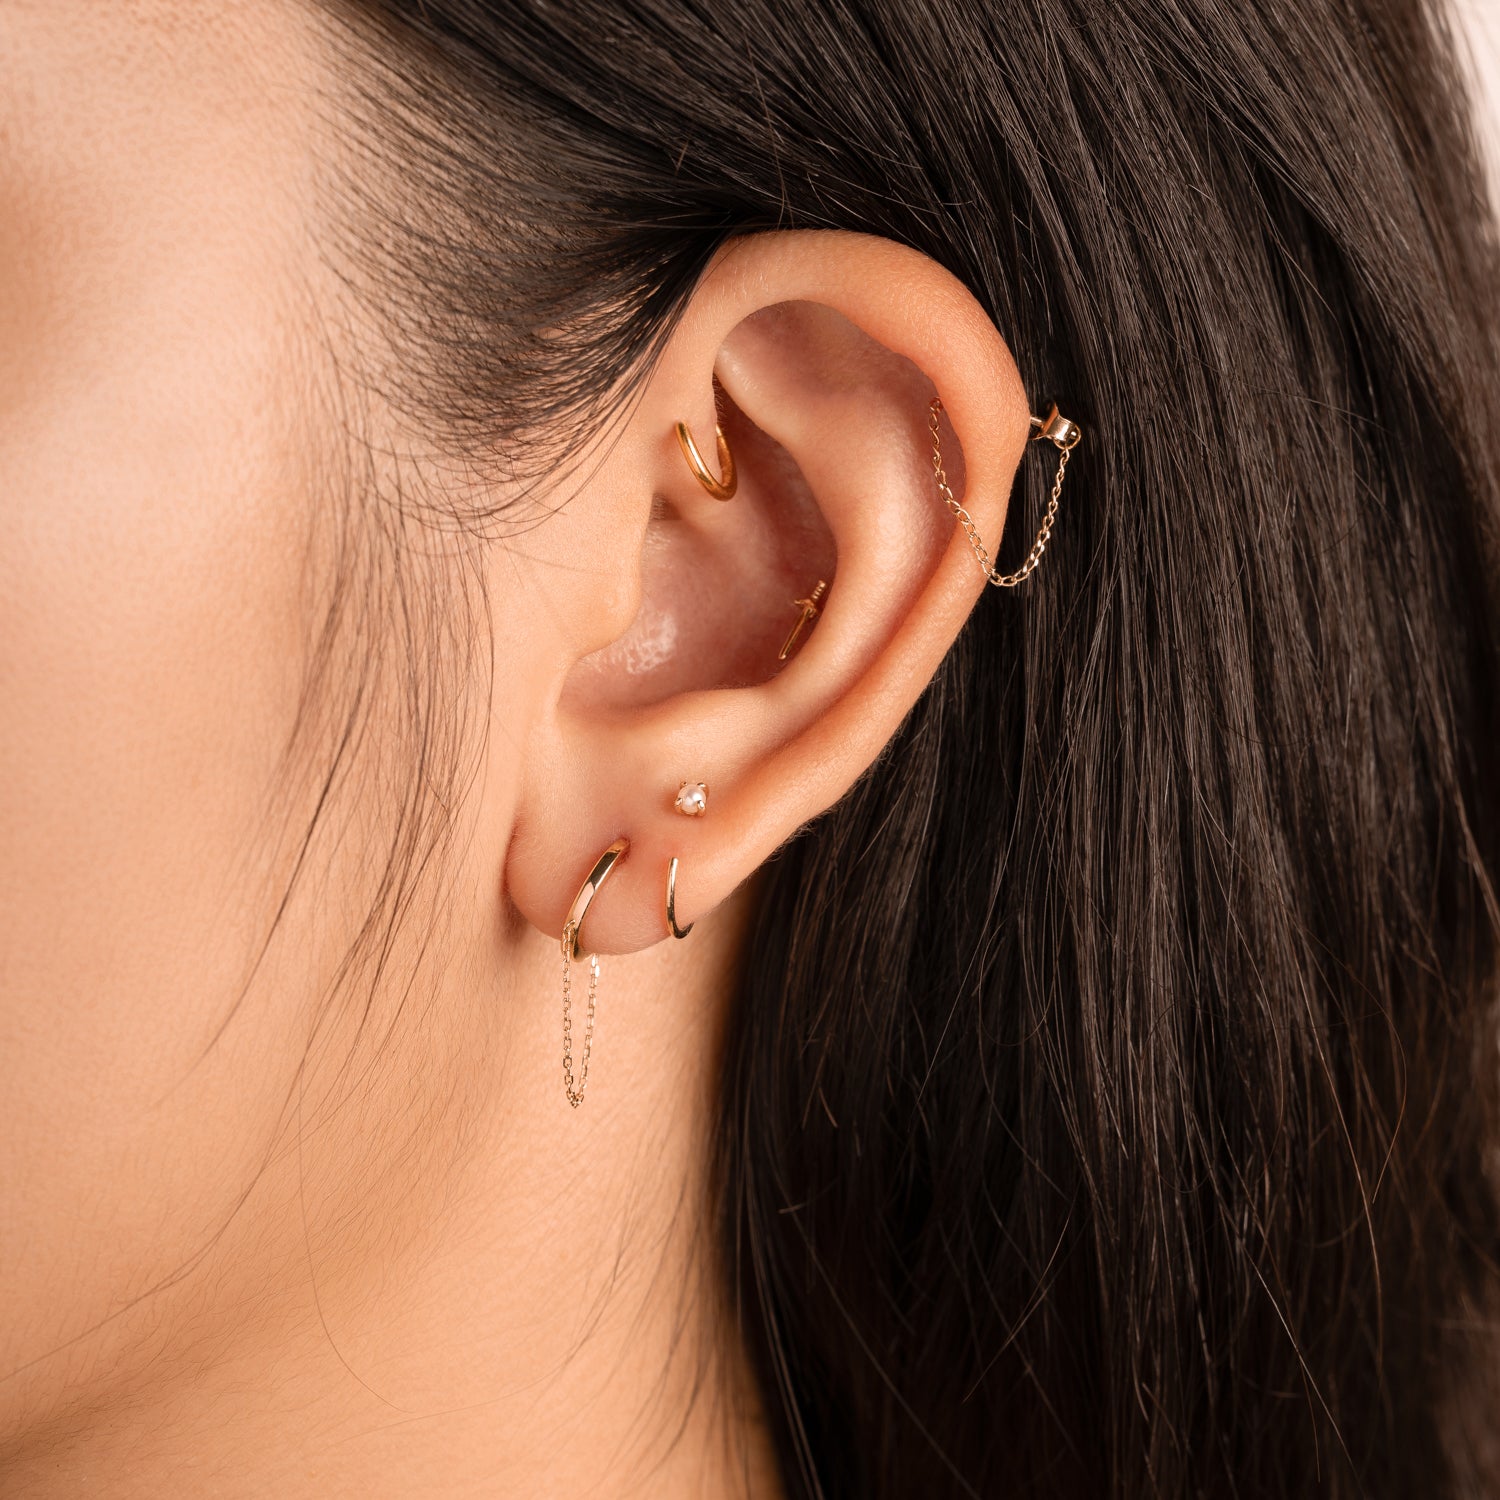 J&CO Jewellery 14K Solid Gold Endless Little Hoop Earrings 12mm